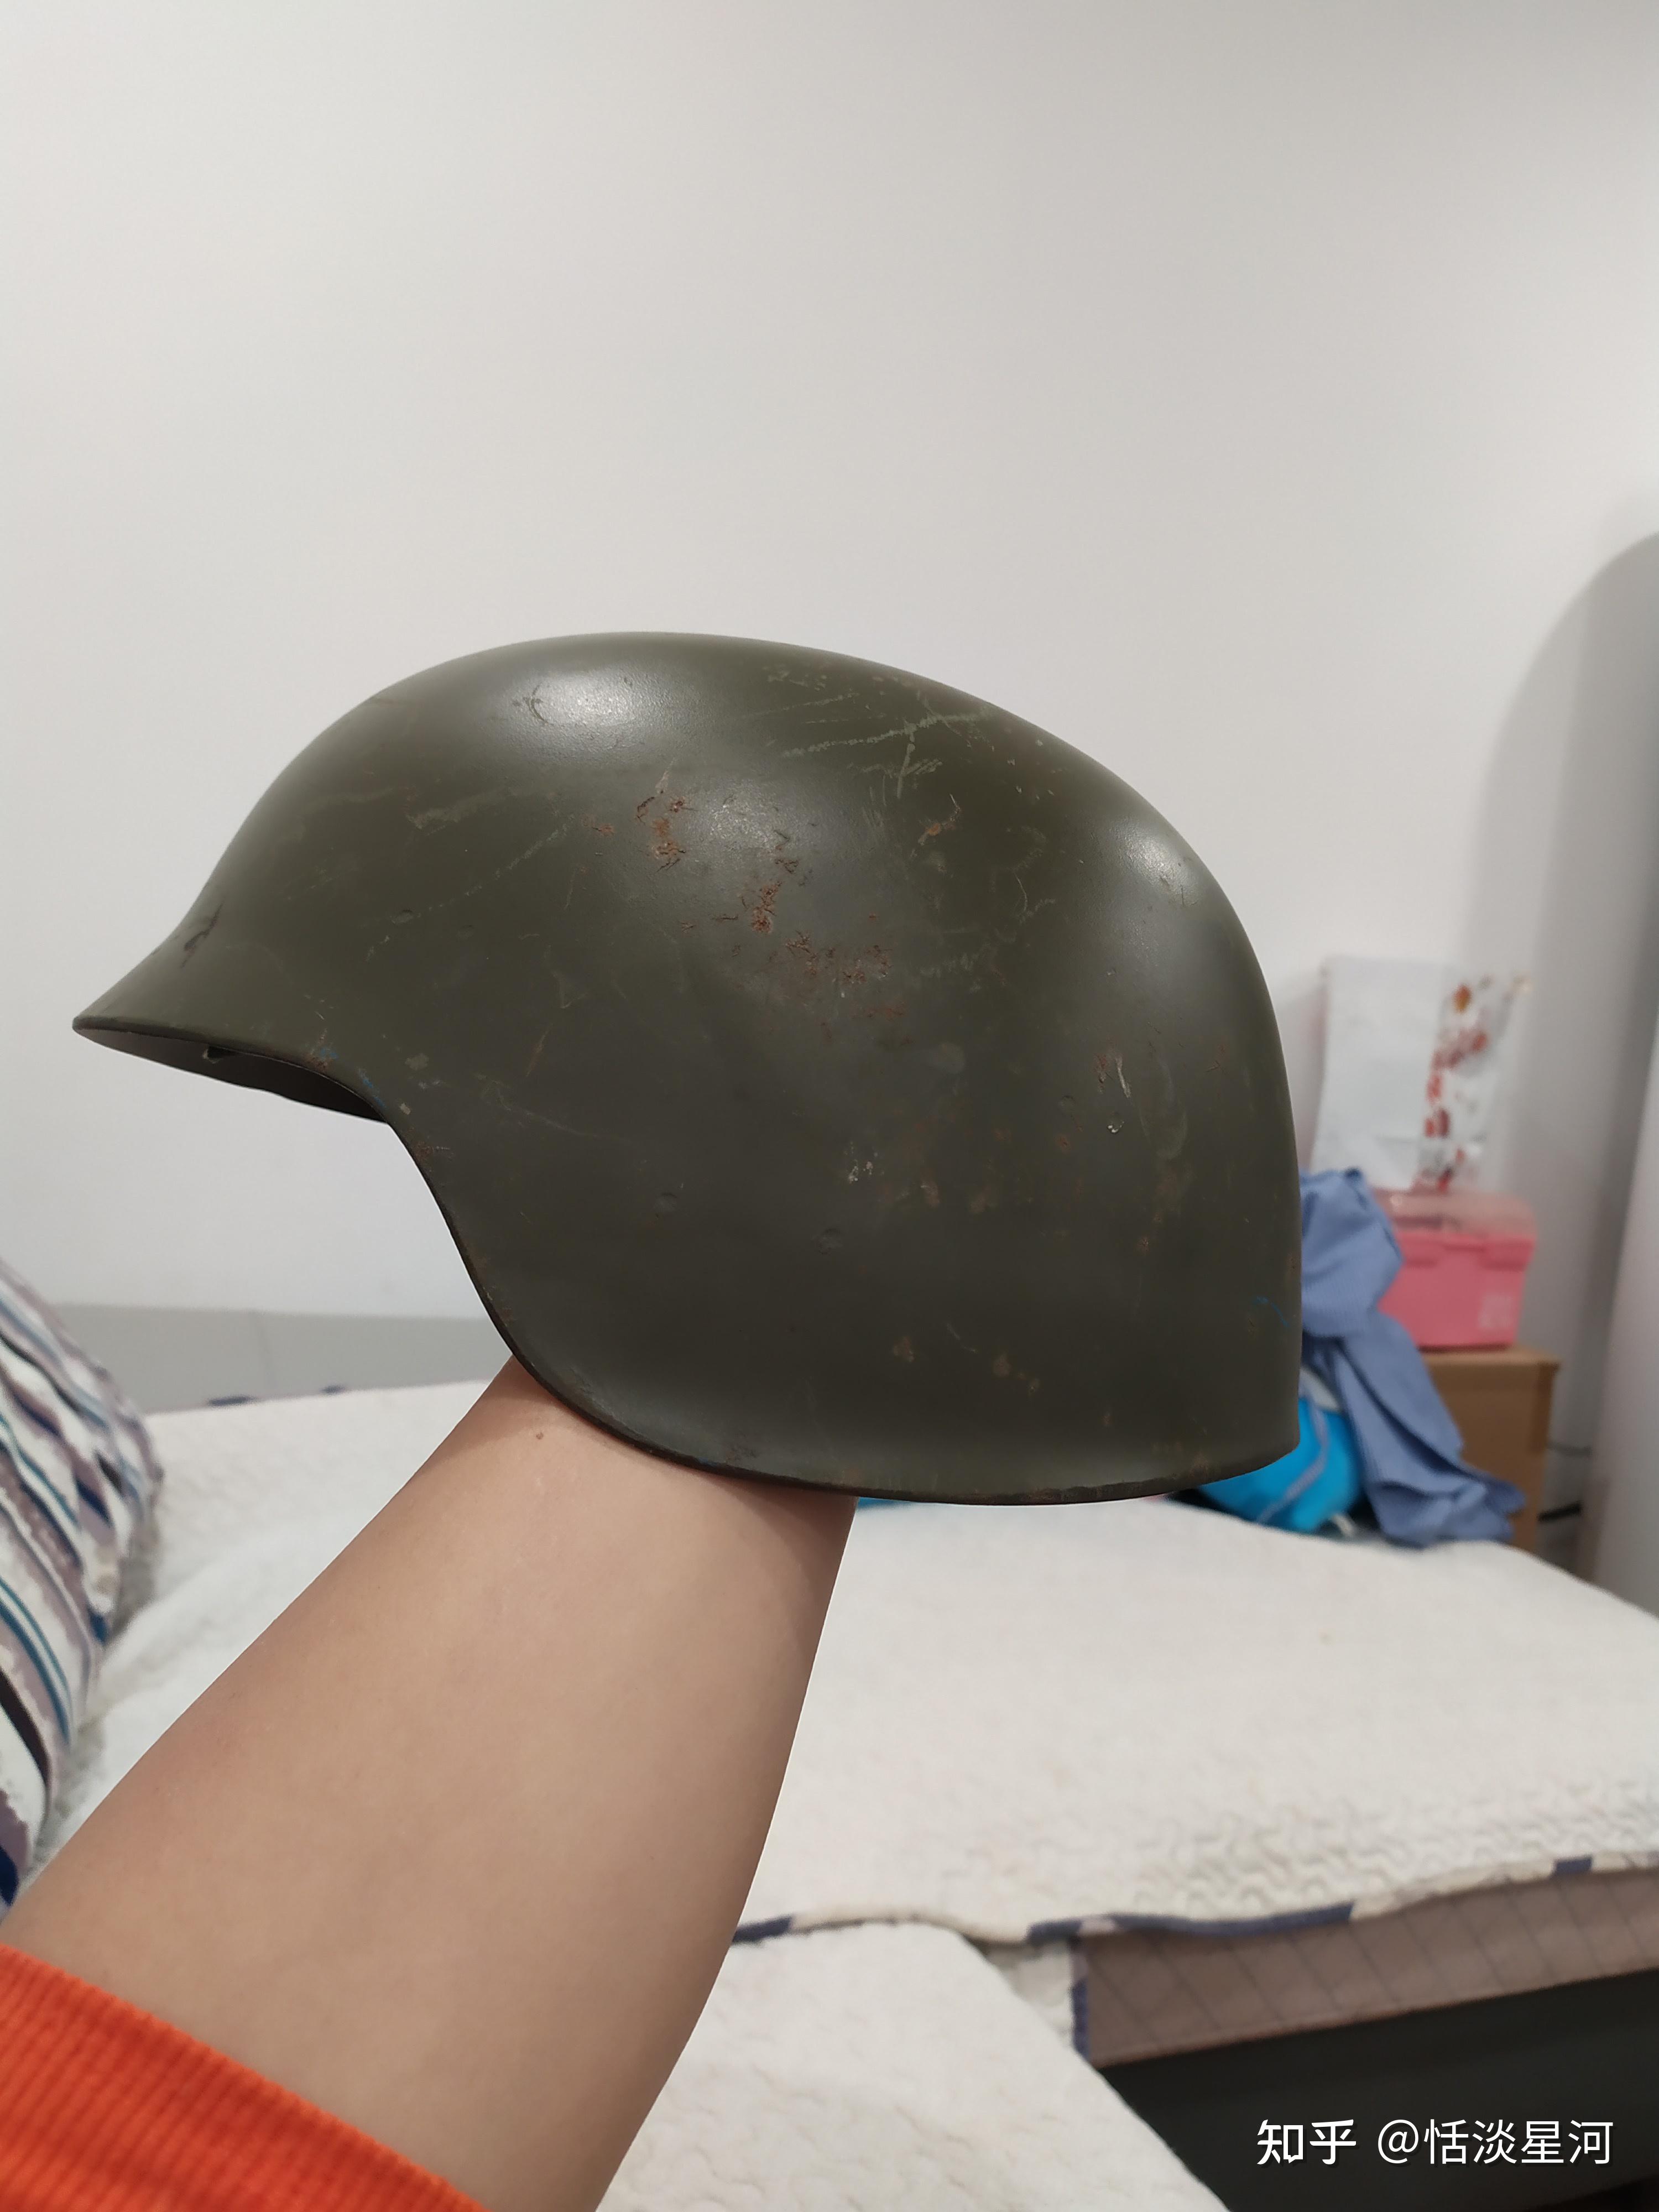 东德的m56头盔按我国头盔标准算防御力是几级呢? 